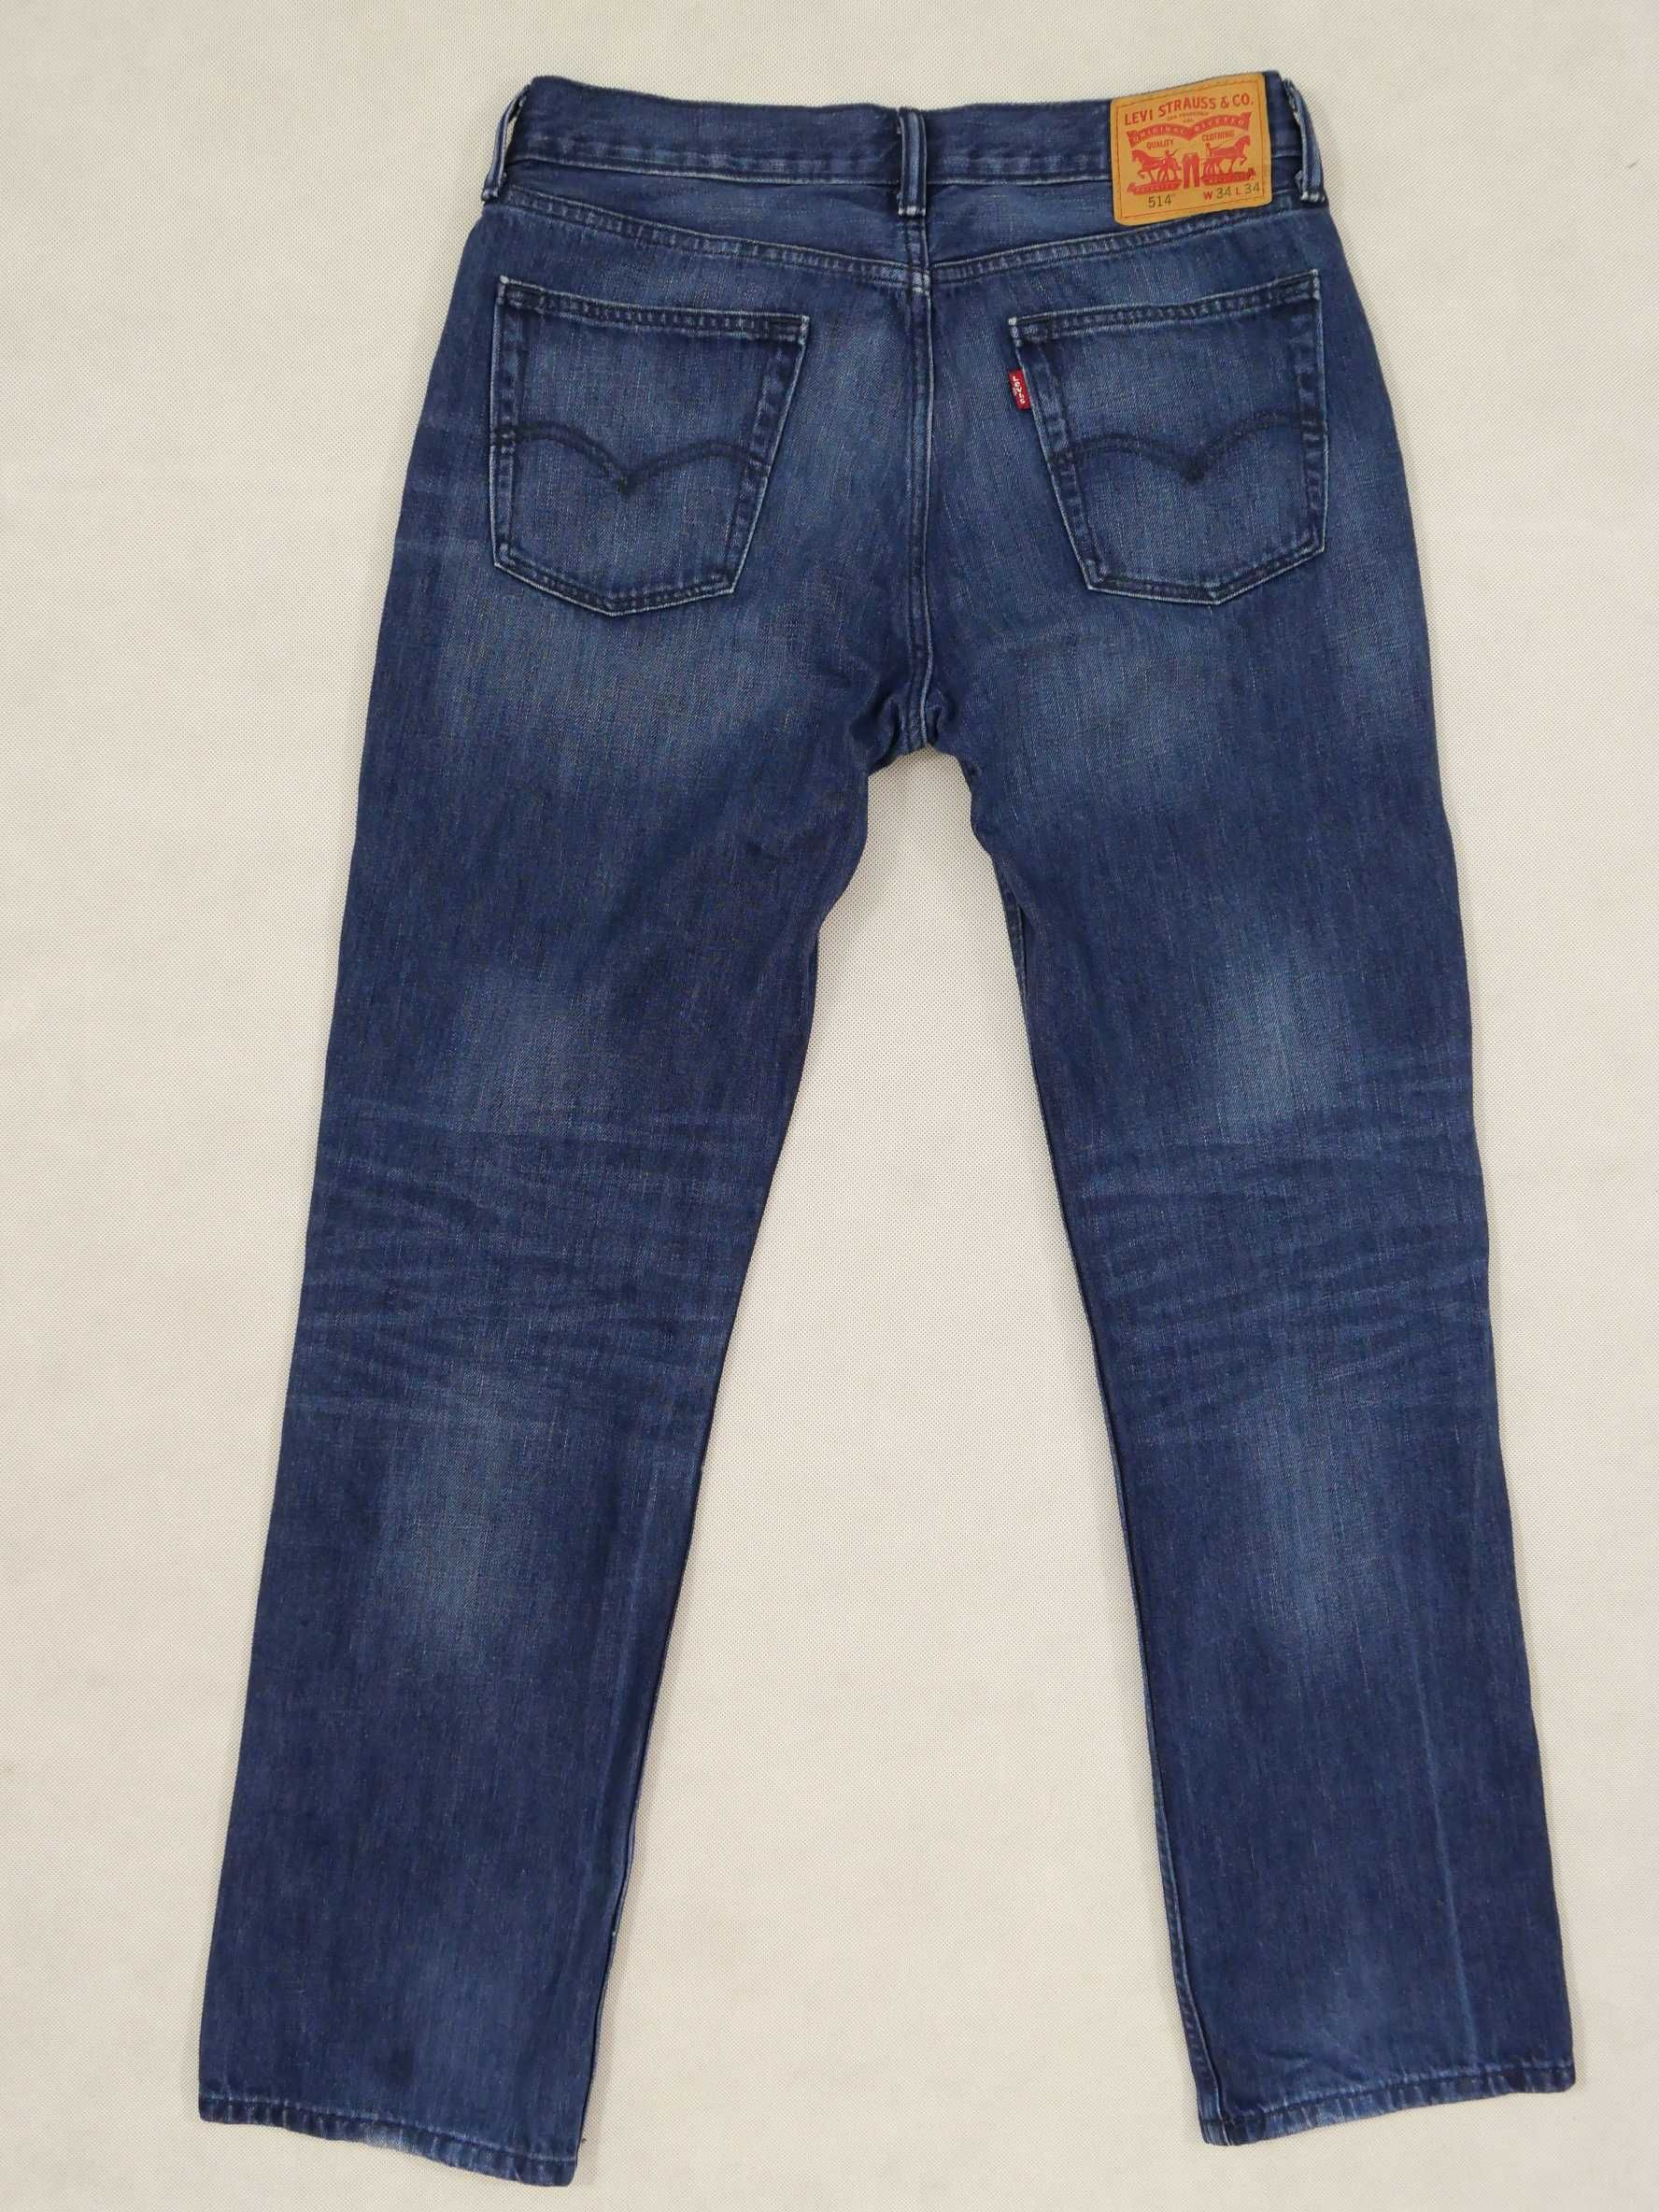 Levis 514 spodnie jeansowe jeansy granatowe W34 L34